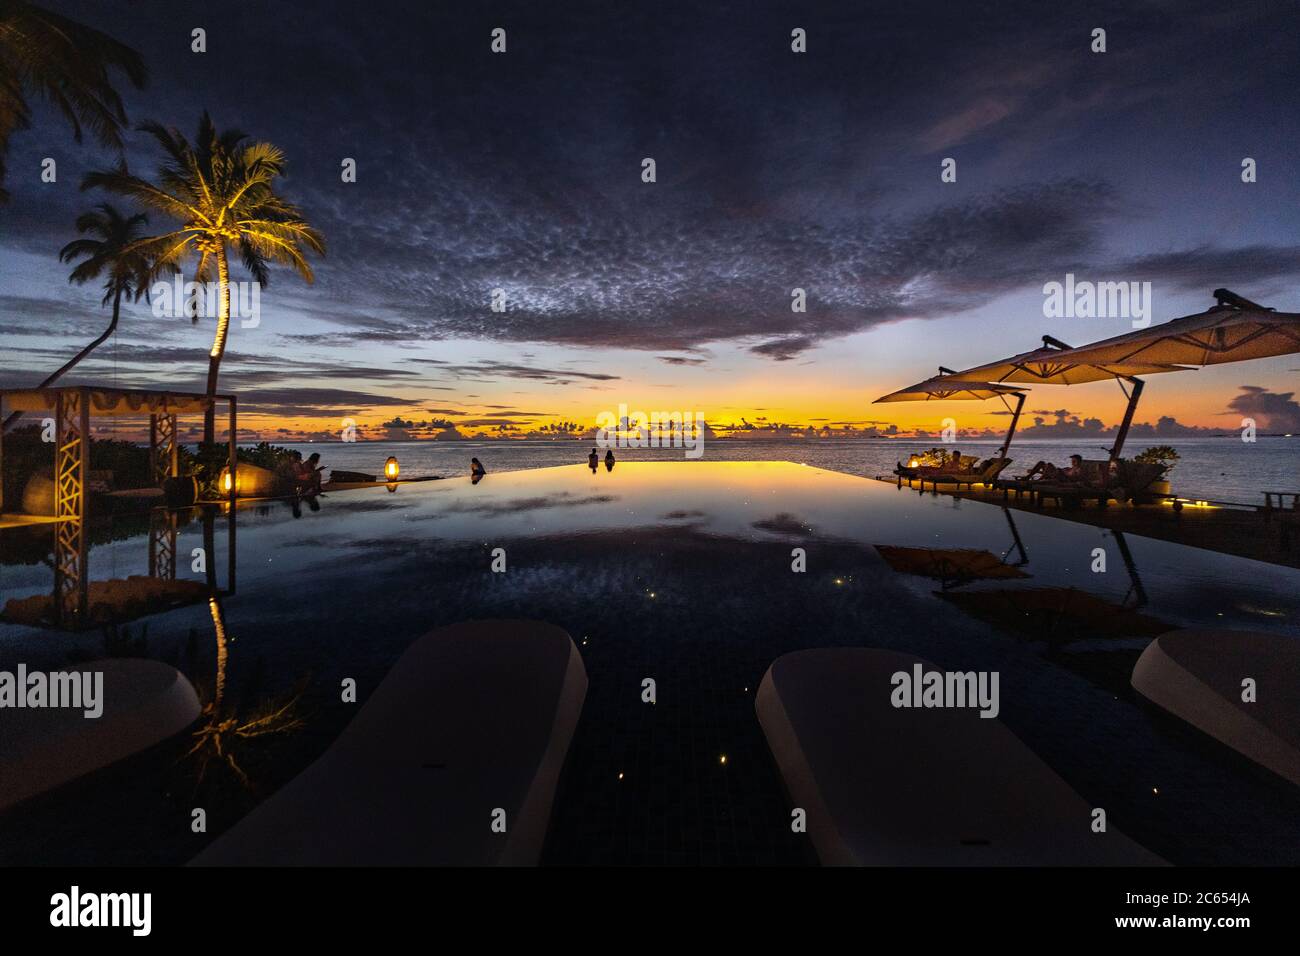 Genießen Sie einen Sonnenuntergang neben einem Infinity-Pool von Inselresorts auf den Malediven, während Sie über die Palmen in den Ozeanhorizont blicken Stockfoto